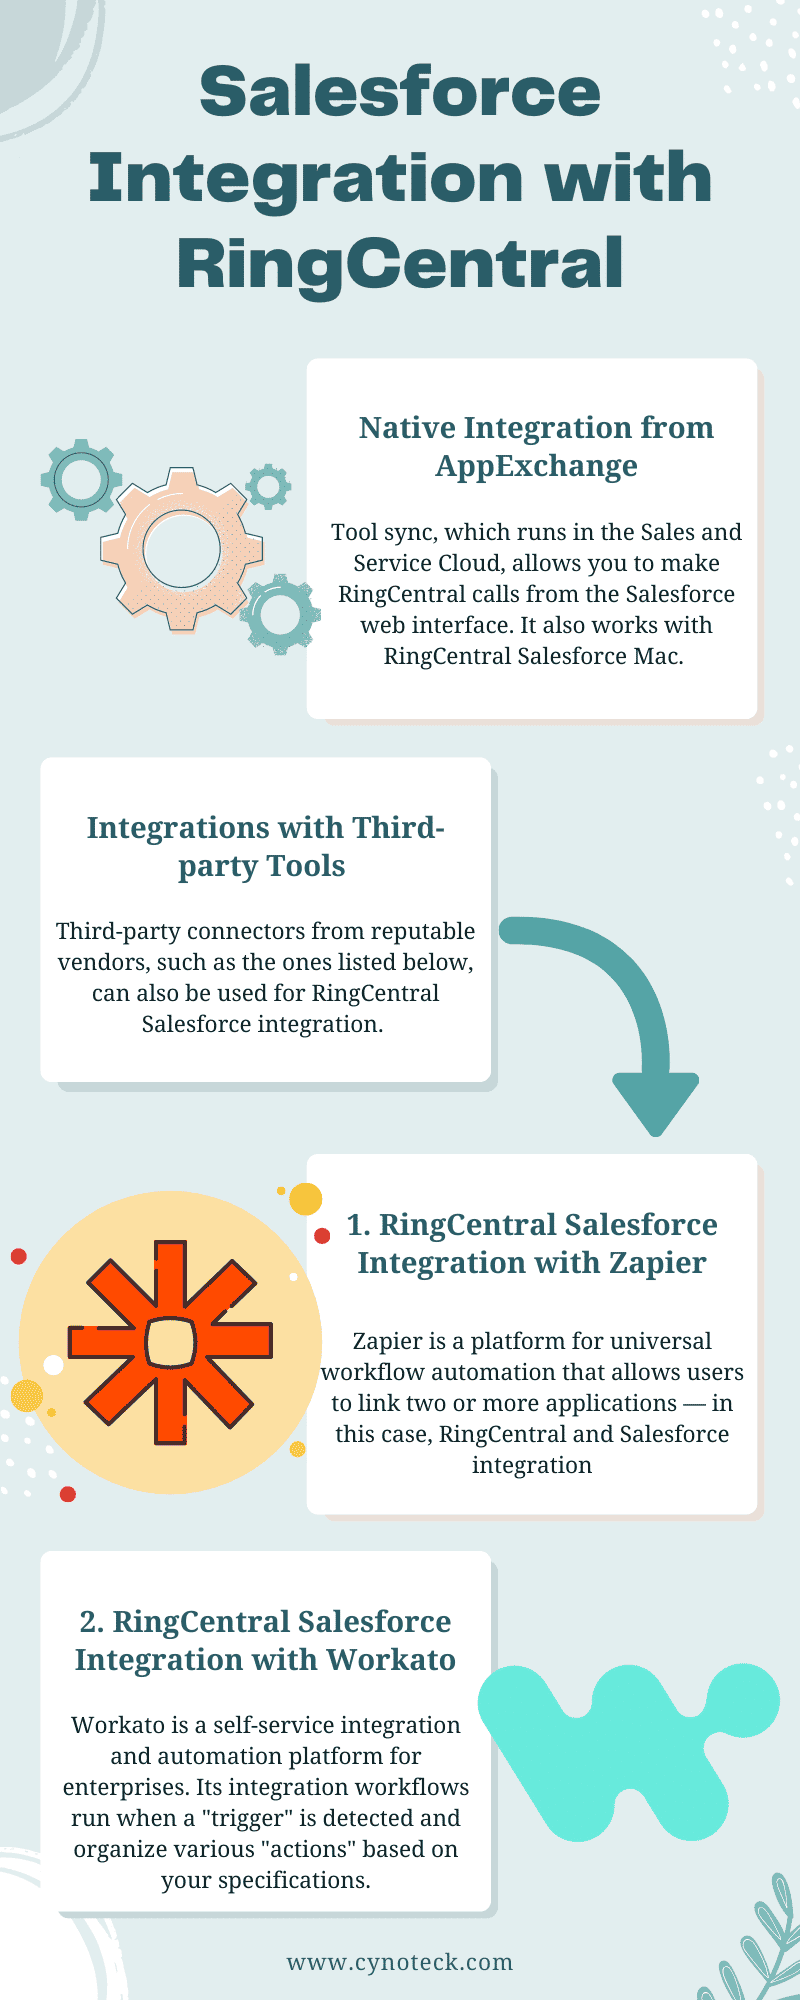 RingCentral Integration